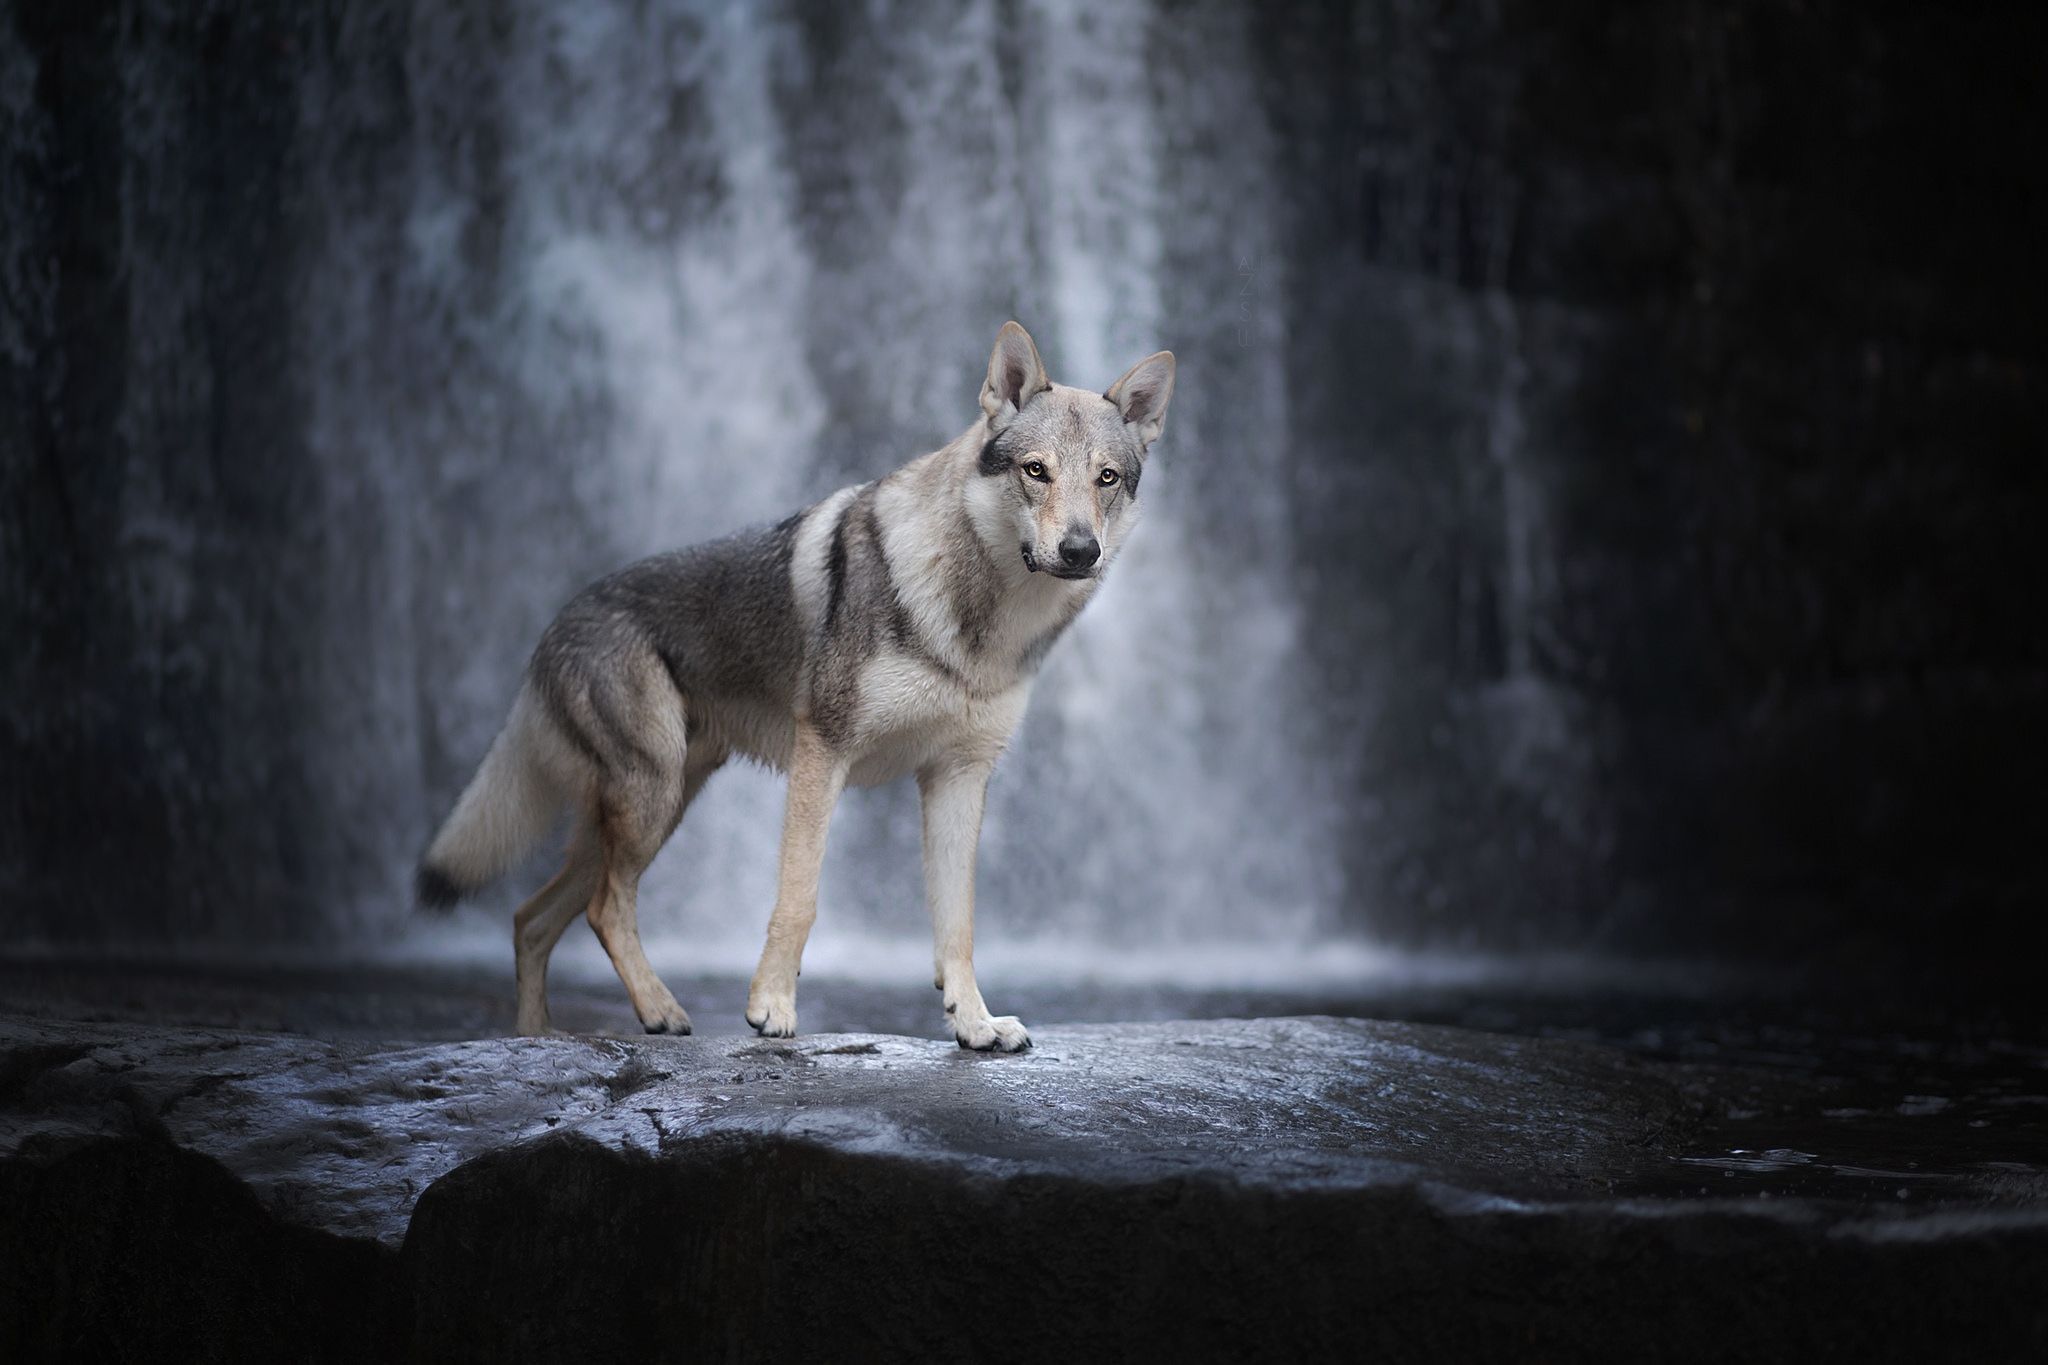 Обои хищник волк на водопад животное - бесплатные картинки на Fonwall